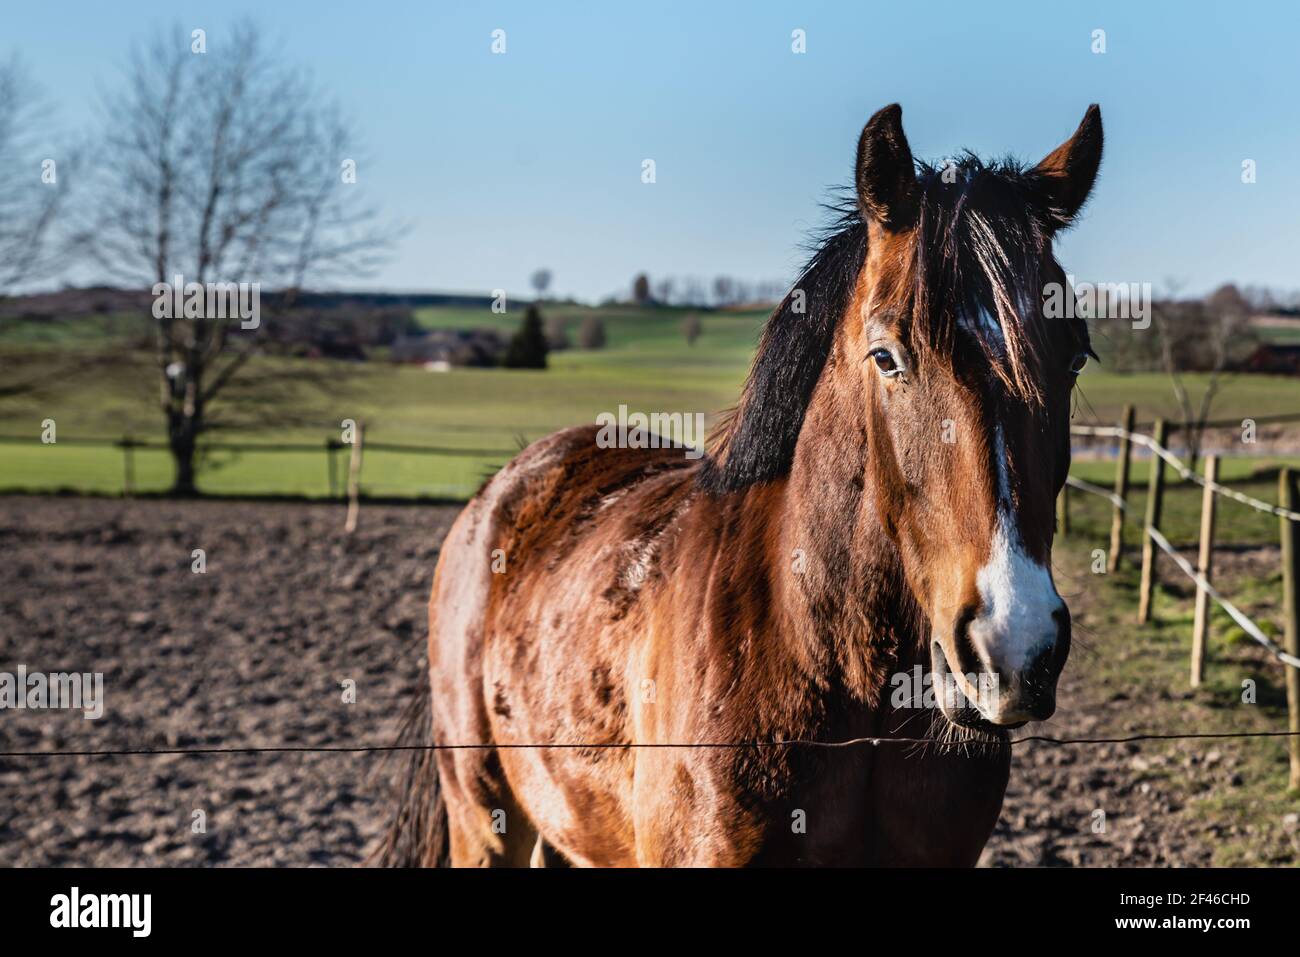 Bruno cavallo prigioniero in un campo di fattoria con creme marrone scuro che splende in una giornata di sole. Tranquillo, bel cavallo di castagno marrone o stallone al di là di una recinzione Foto Stock